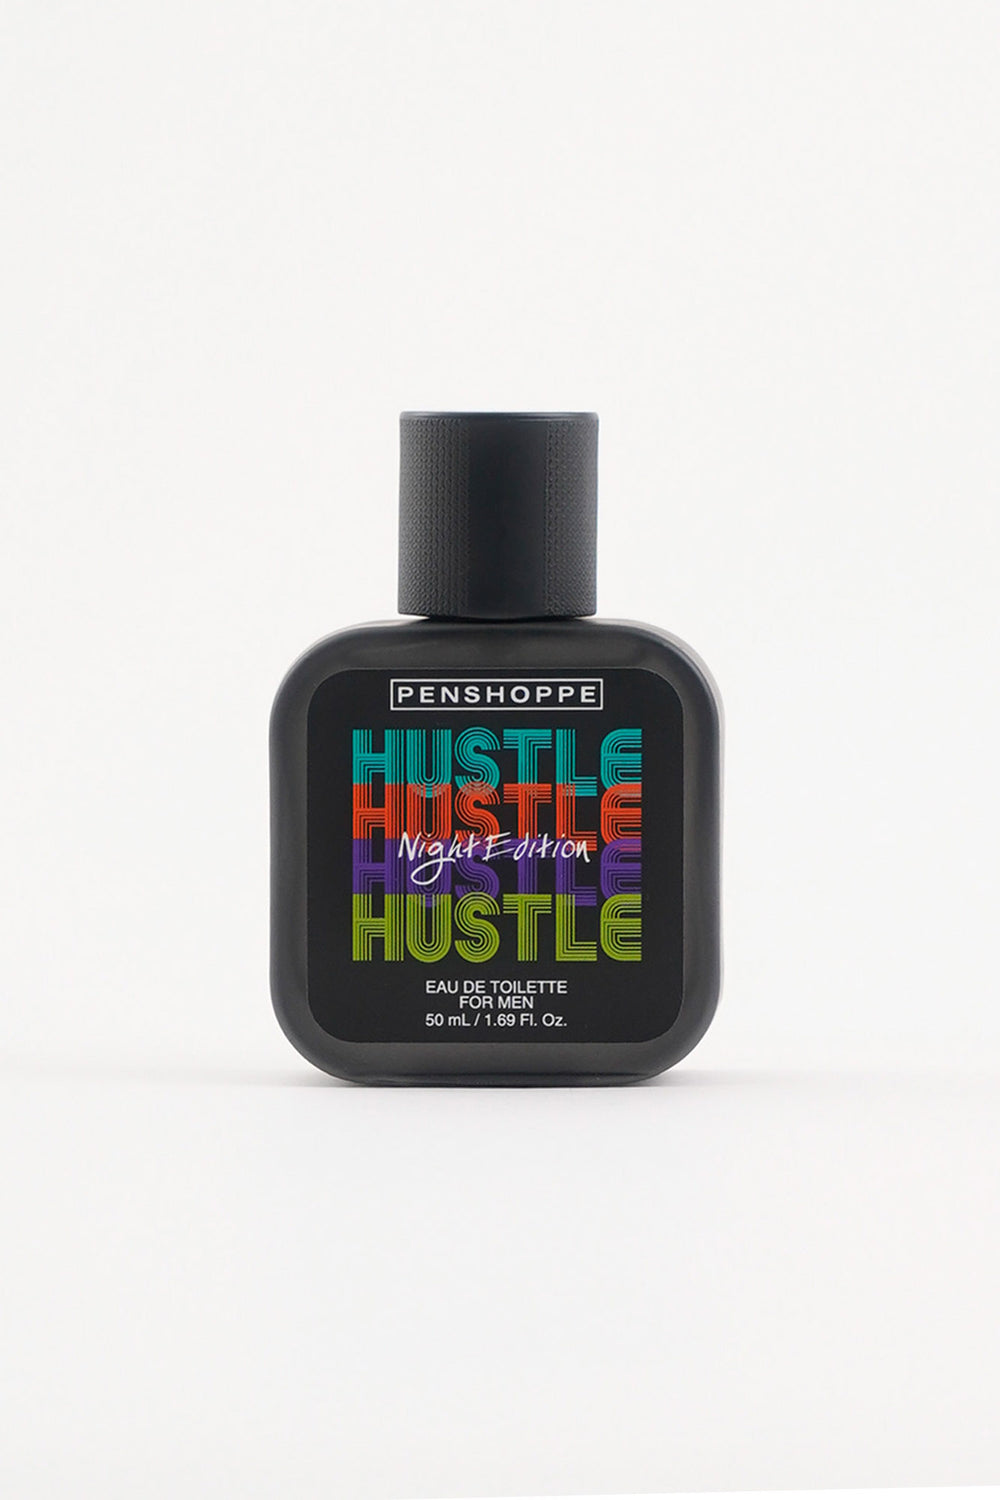 Hustle Night Eau de Toilette for Men 50ML